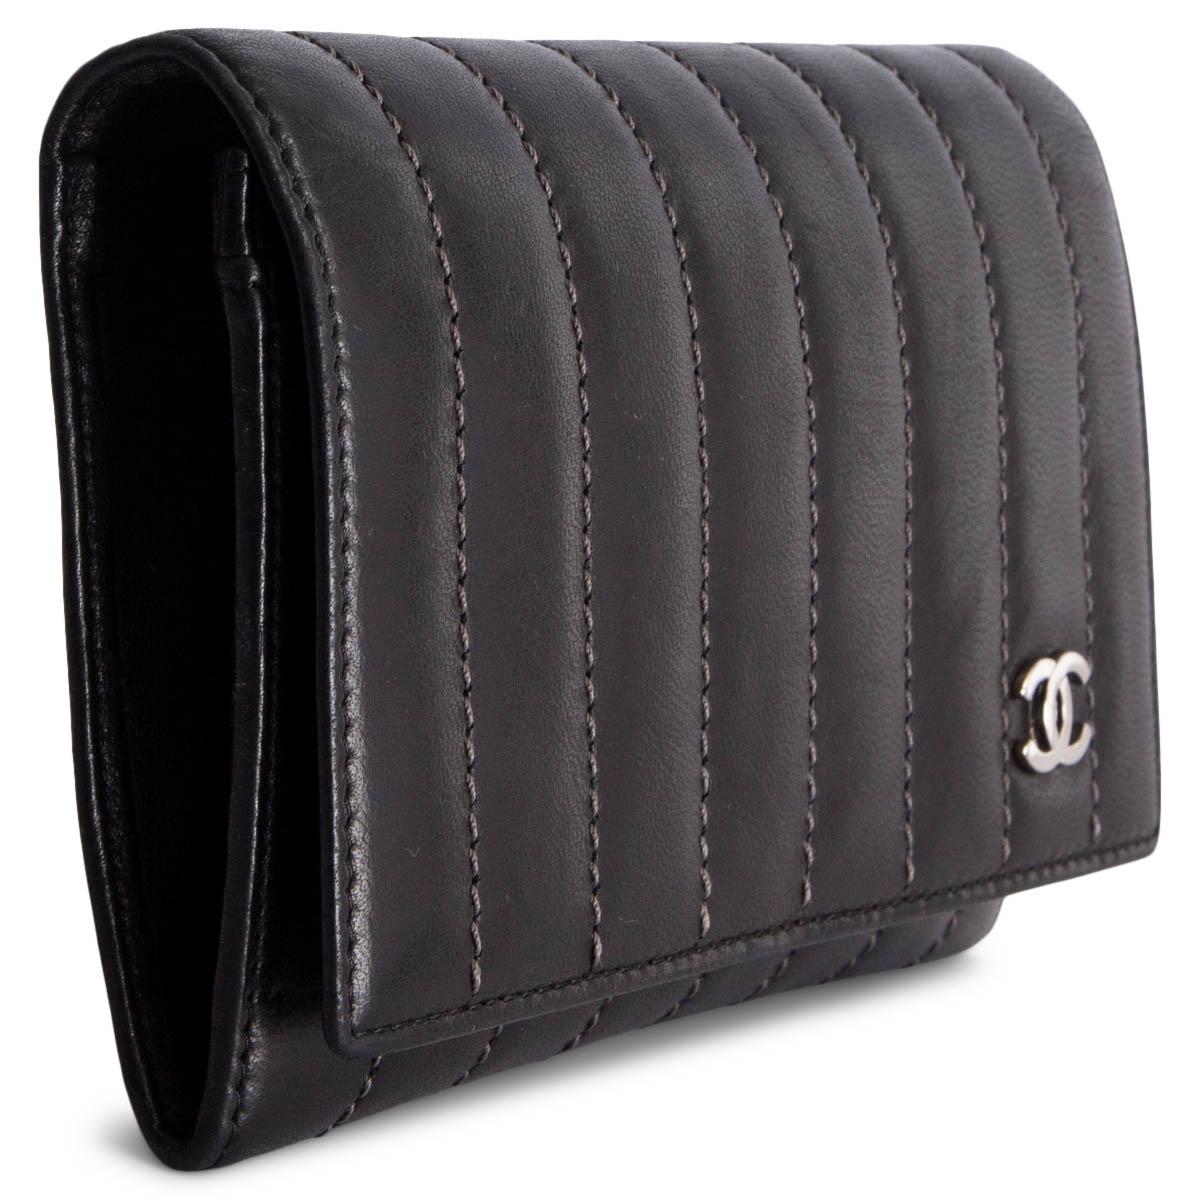 100% authentische Chanel Brieftasche mit genähten Streifen in grau. Sie wird mit einem Druckknopf geöffnet und ist mit schwarzem Lammfell und Logo-Nylon gefüttert. Das Design ist in zwei Fächer mit 3 Kreditkartenfächern und einem Münzfach mit